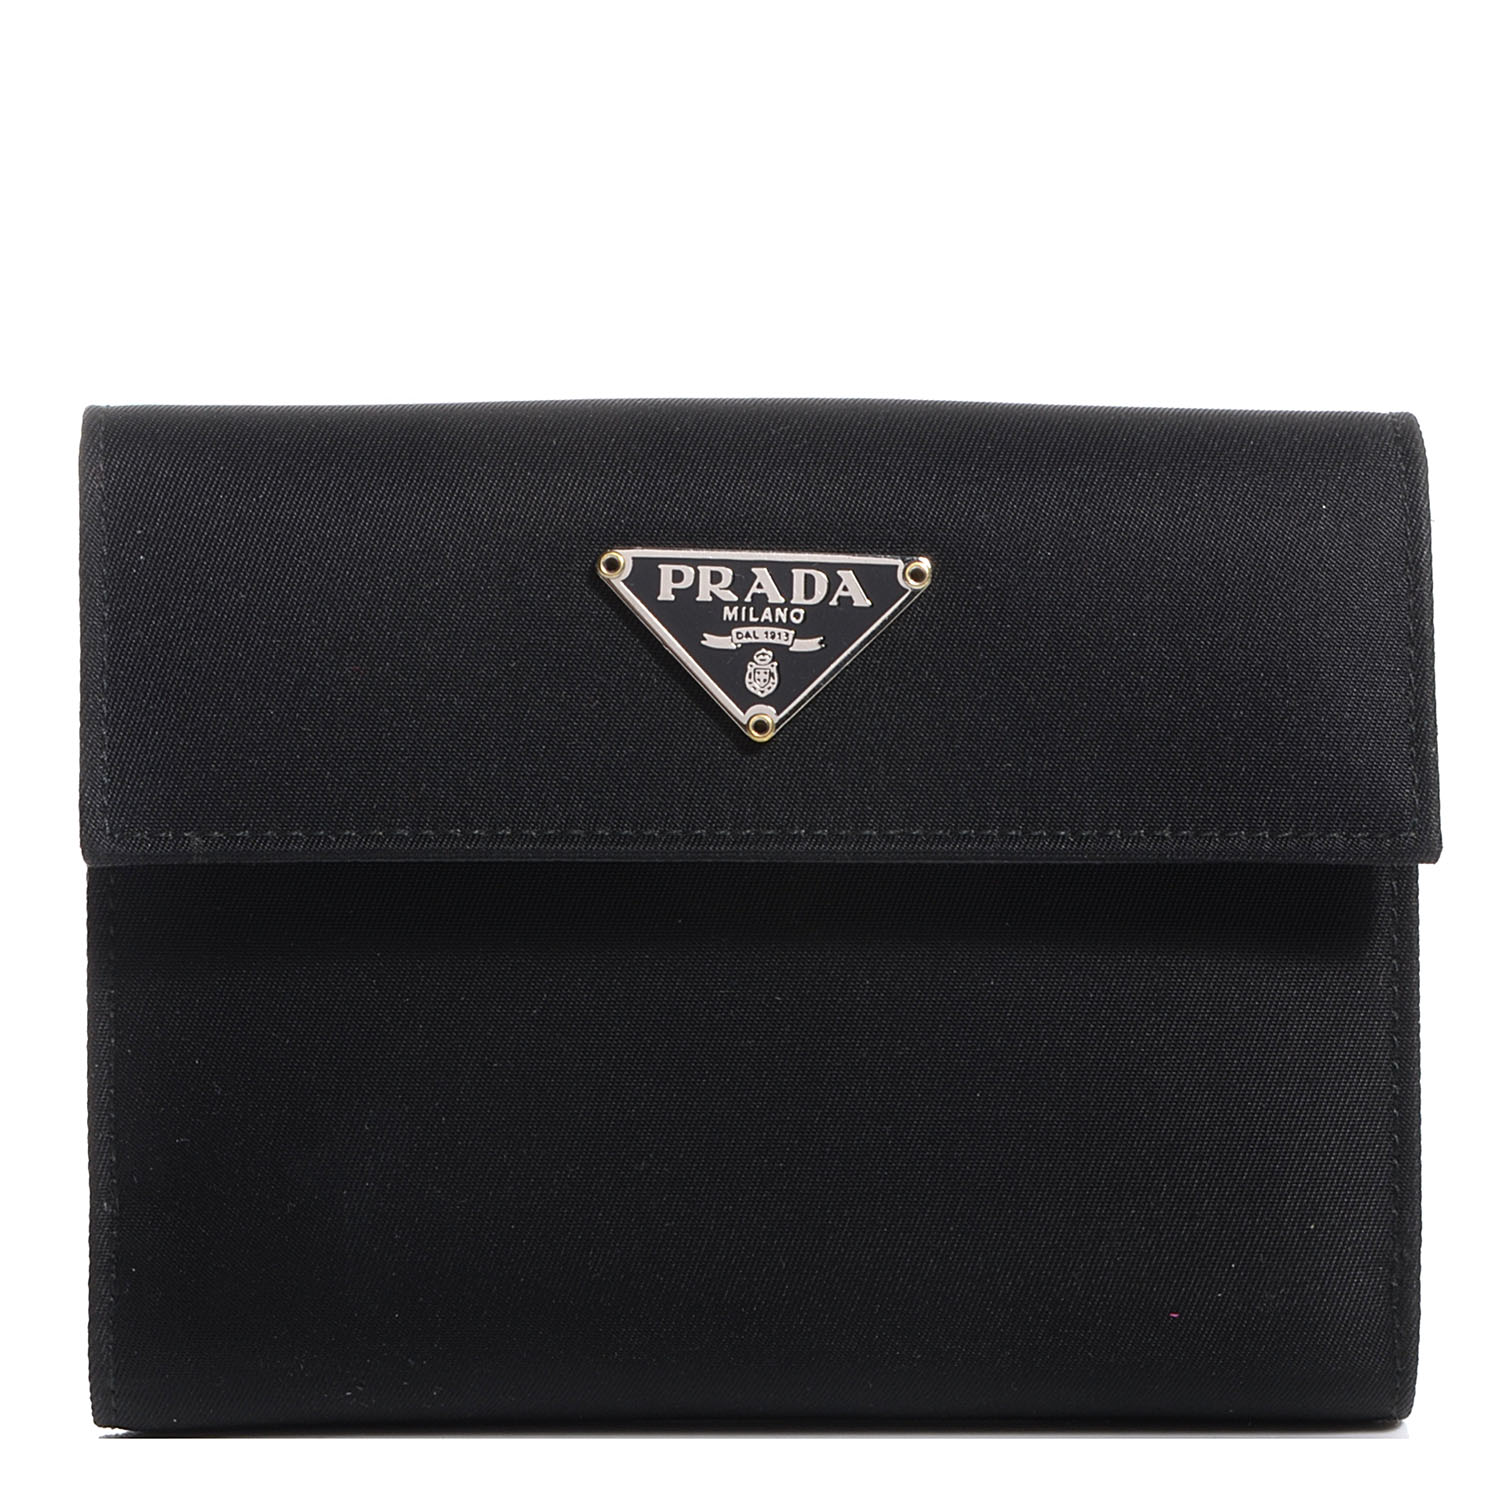 PRADA Tessuto Nylon French Wallet Nero Black 78373